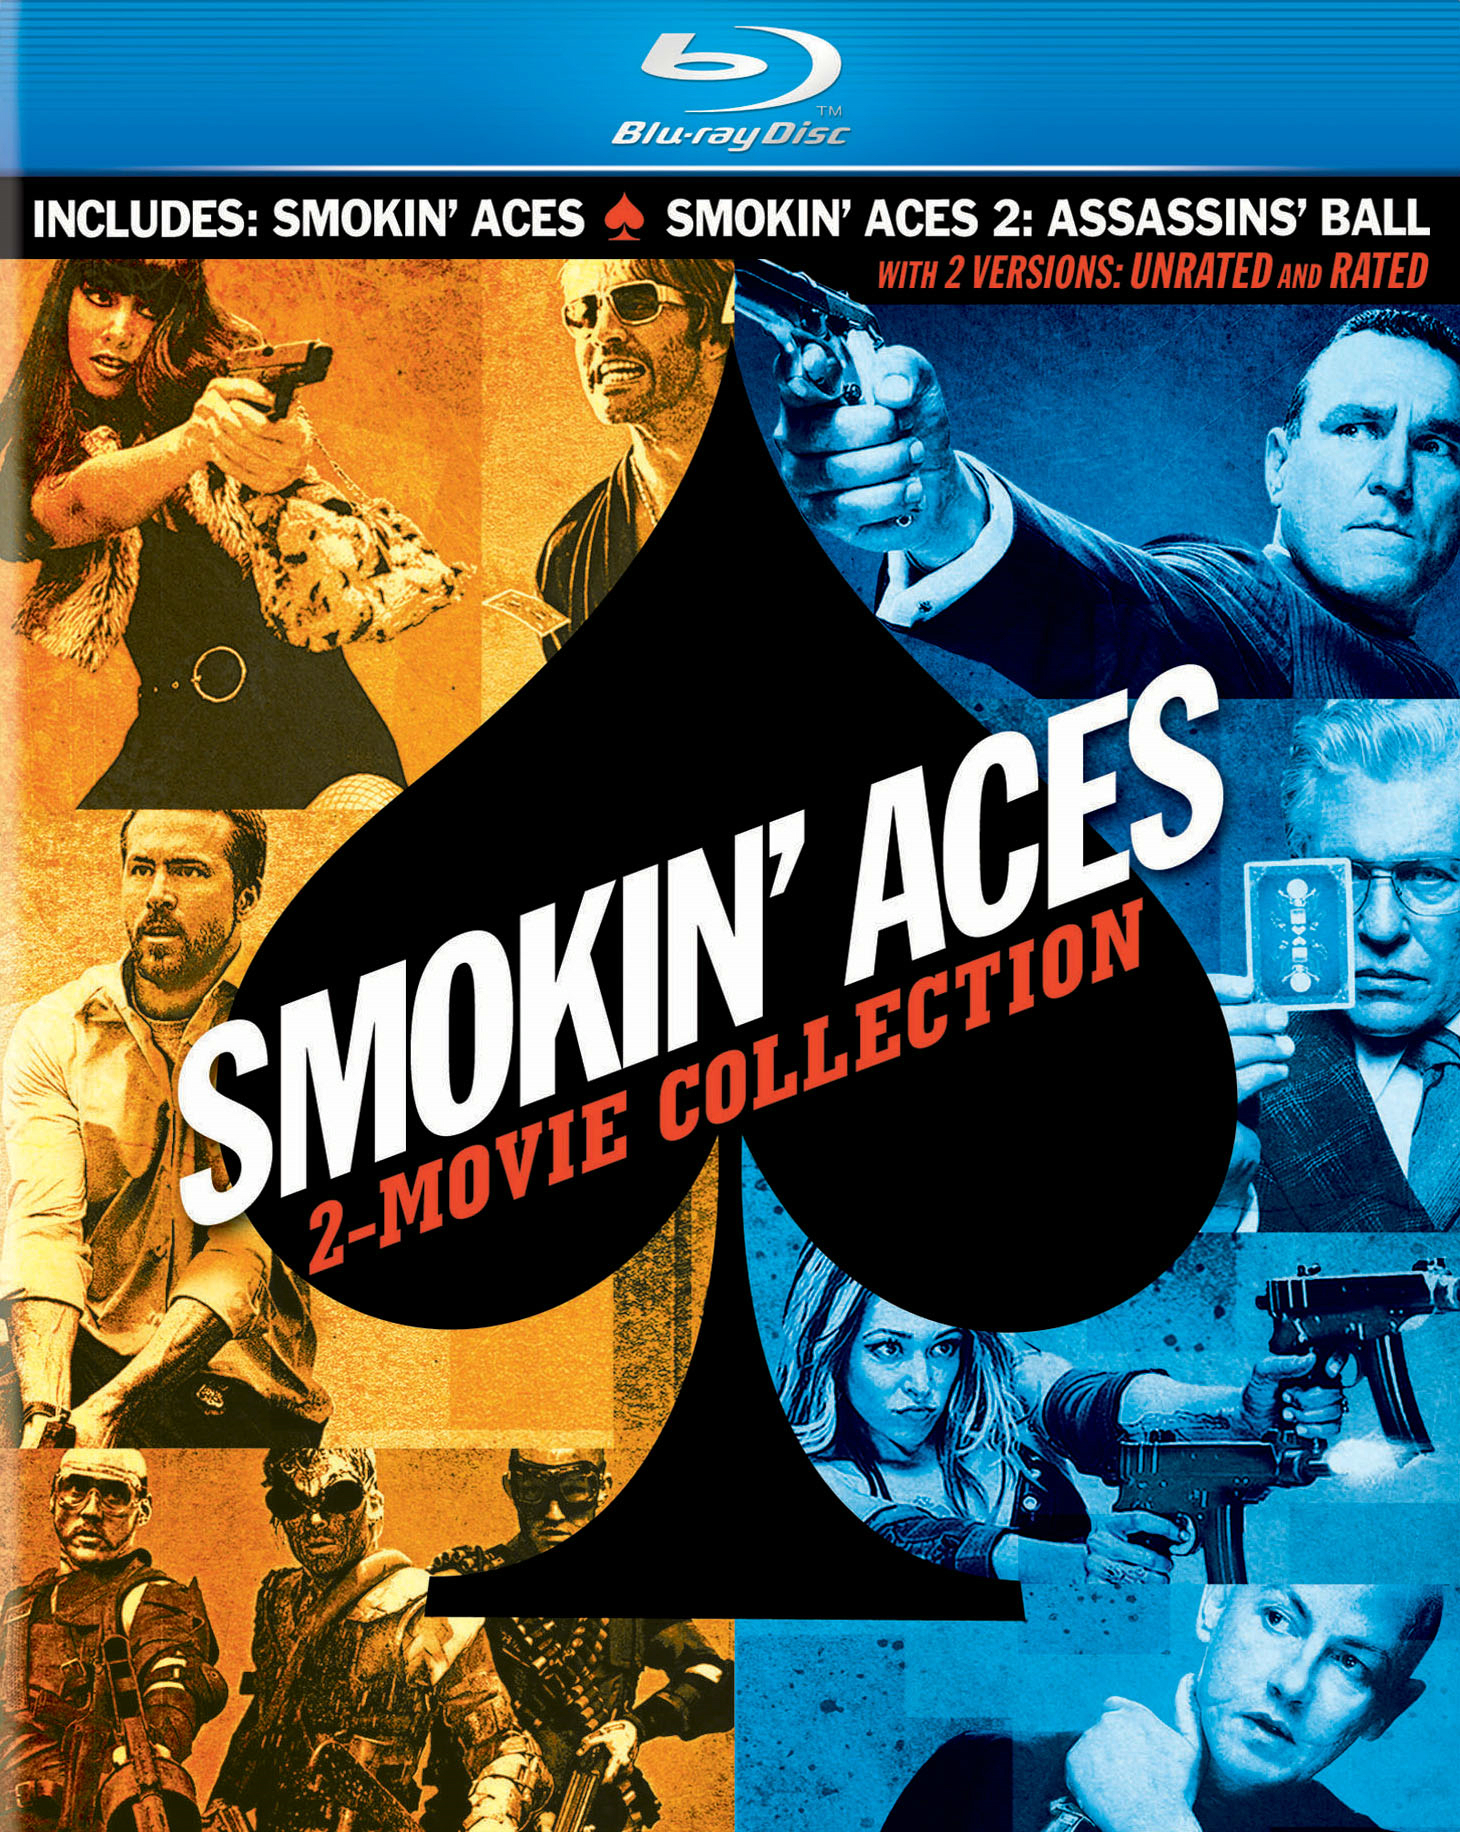 Smokin' Aces/ Smokin' Aces 2 - Assassin's Ball - Blu-ray [ 2010 ]  - Thriller Movies On Blu-ray - Movies On GRUV